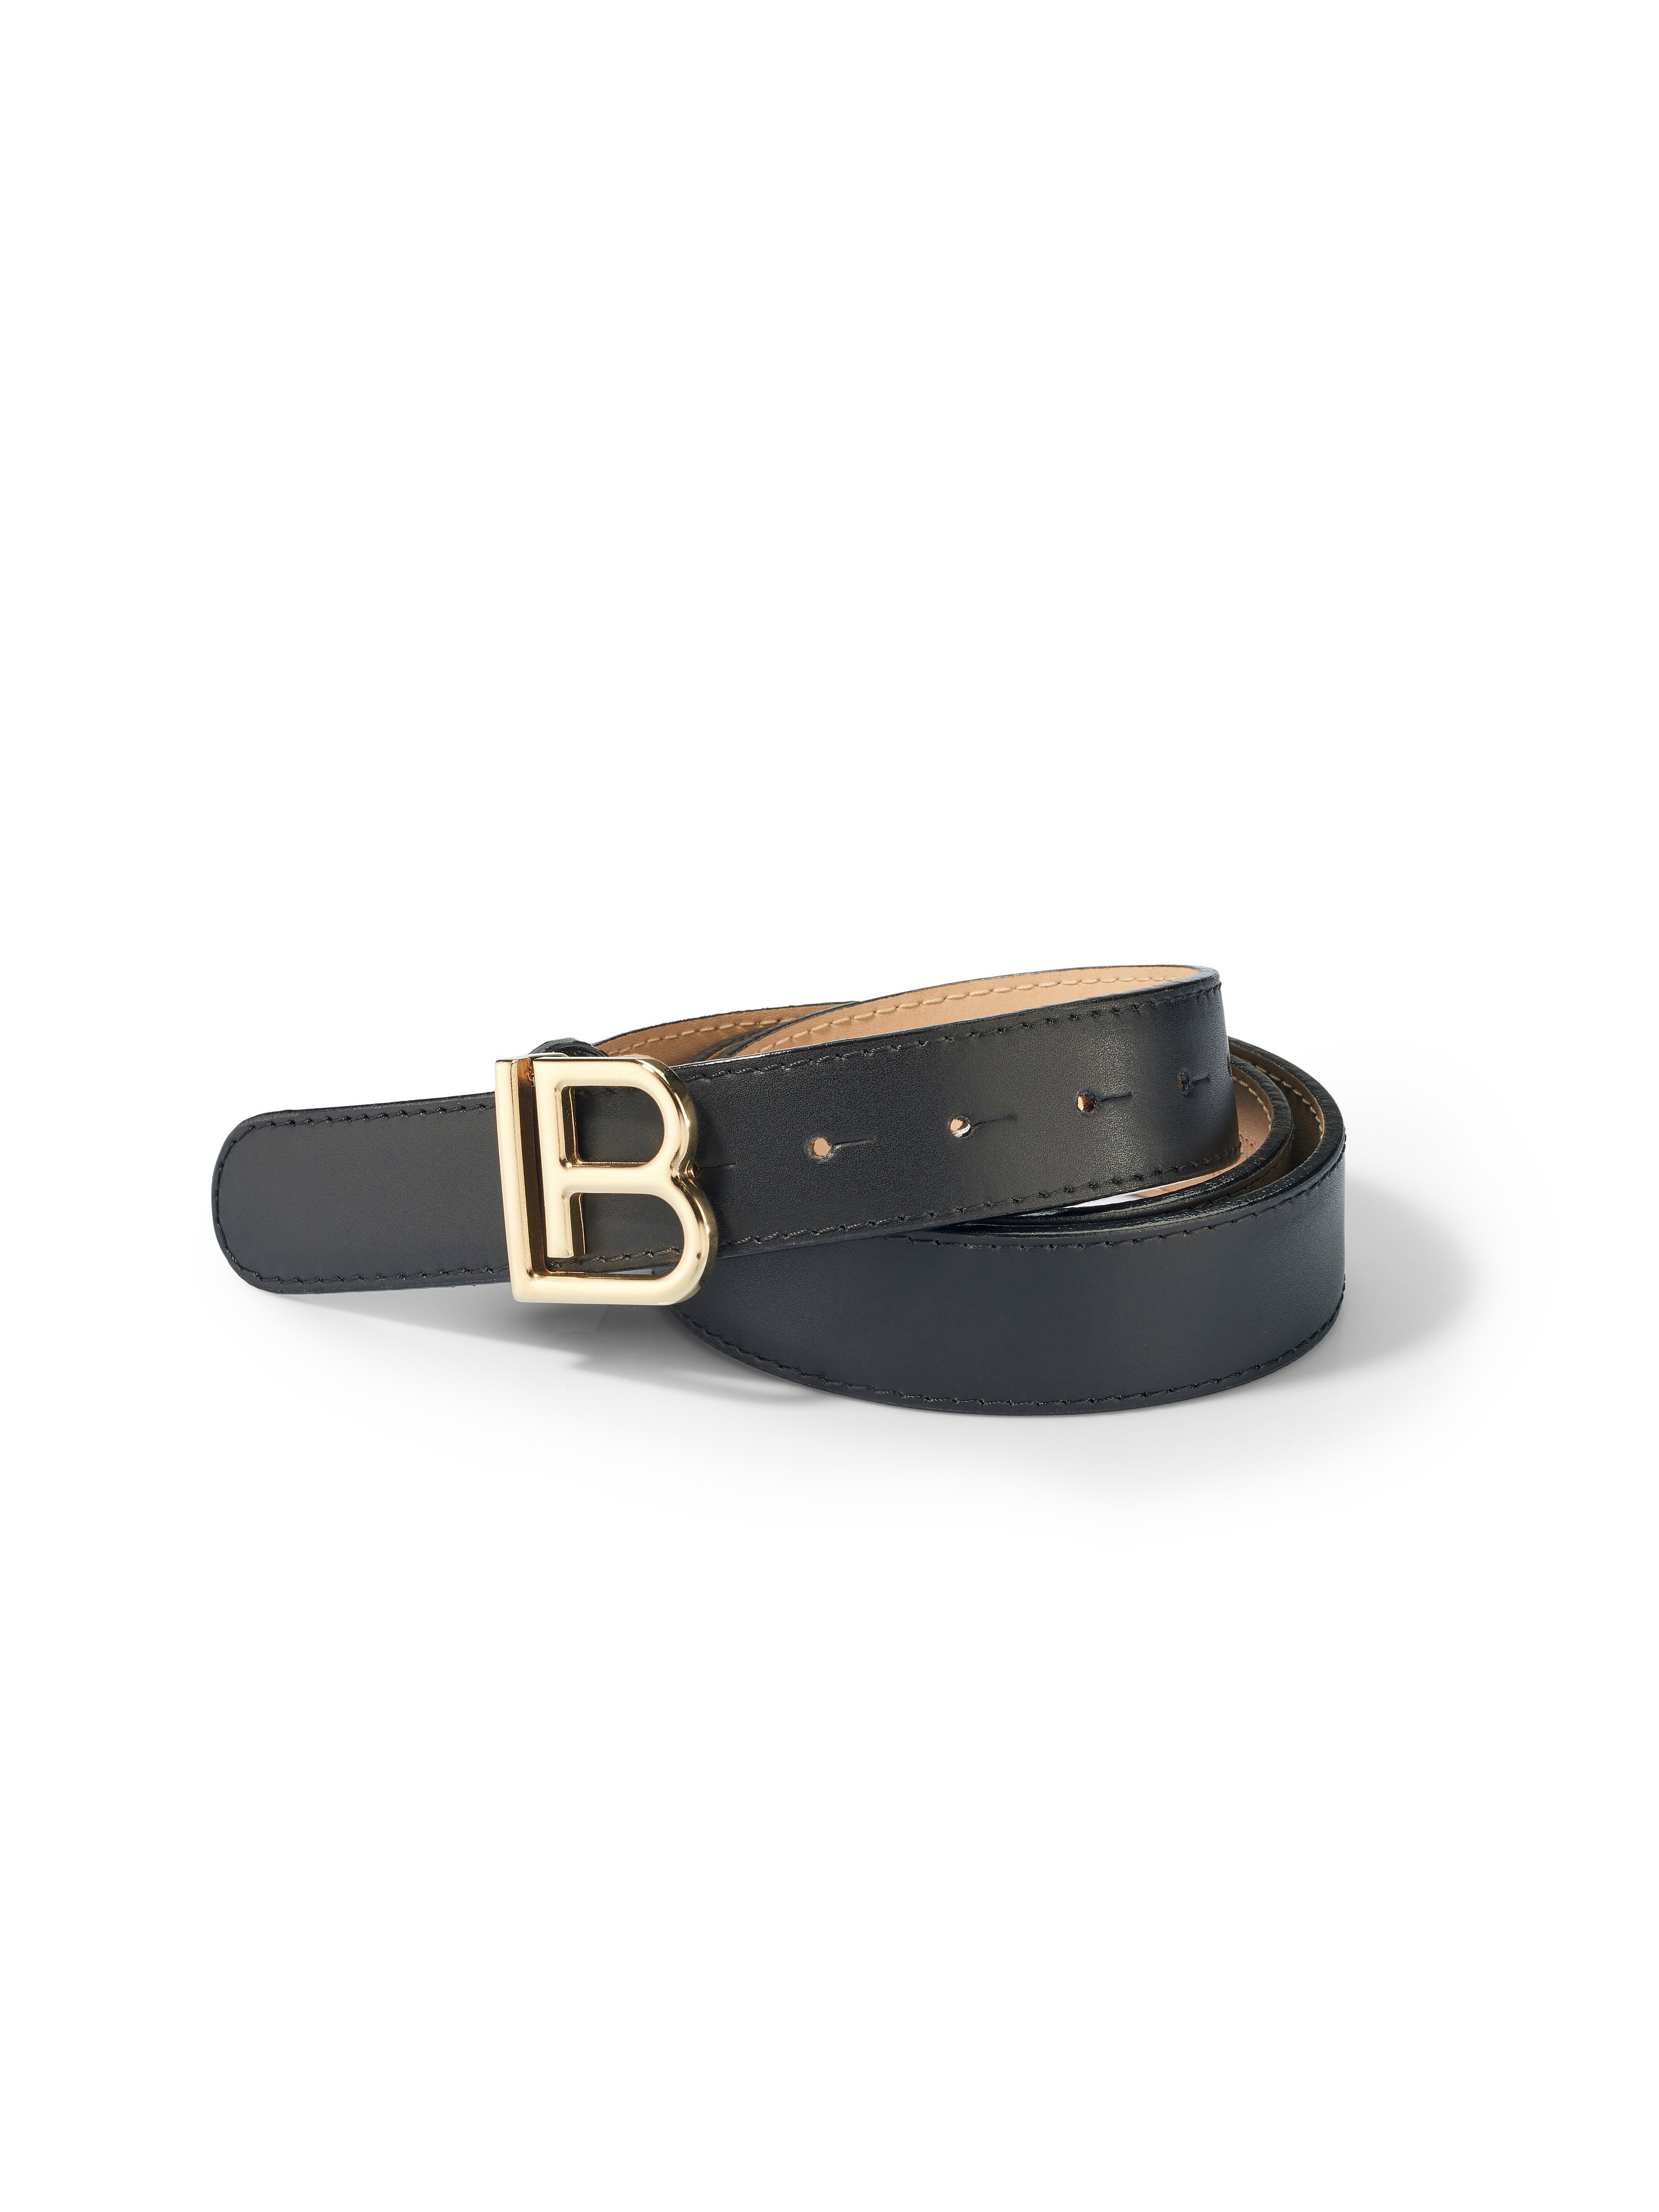 La ceinture cuir Premium  Laura Biagiotti Roma noir taille 85